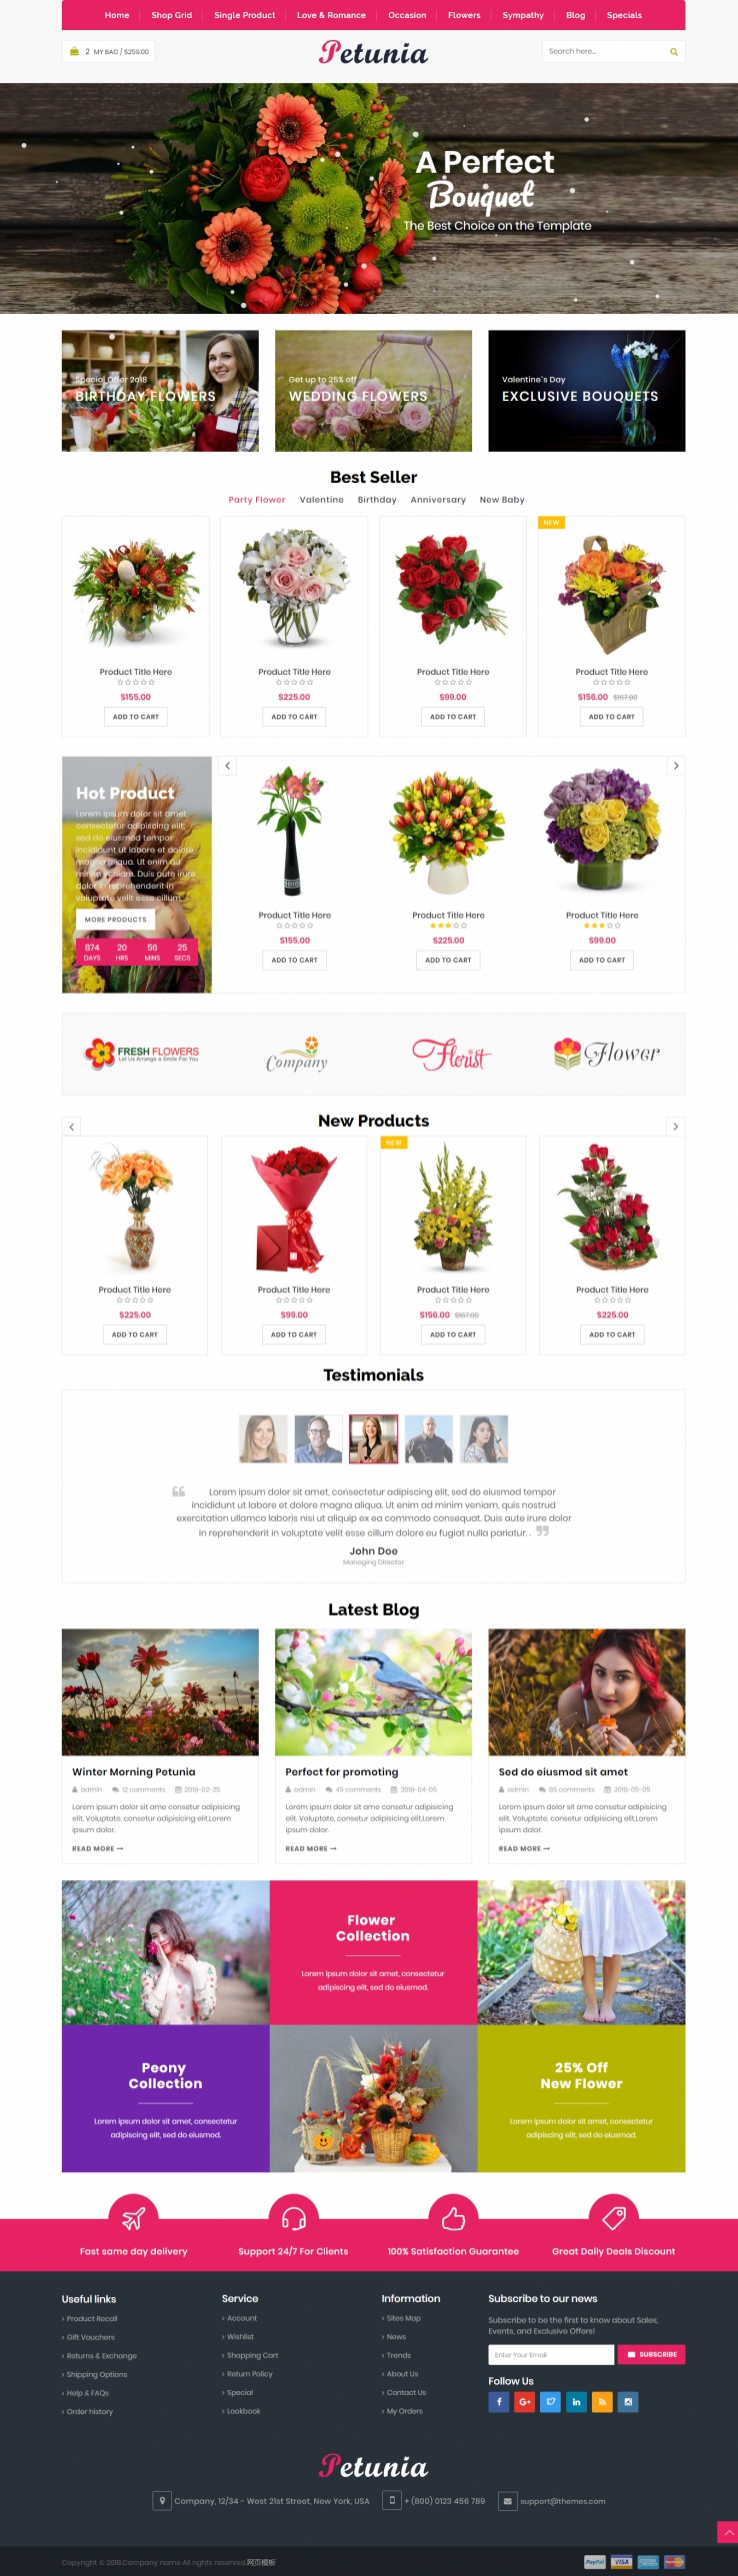 红色简洁风格的网上鲜花商城整站网站源码下载